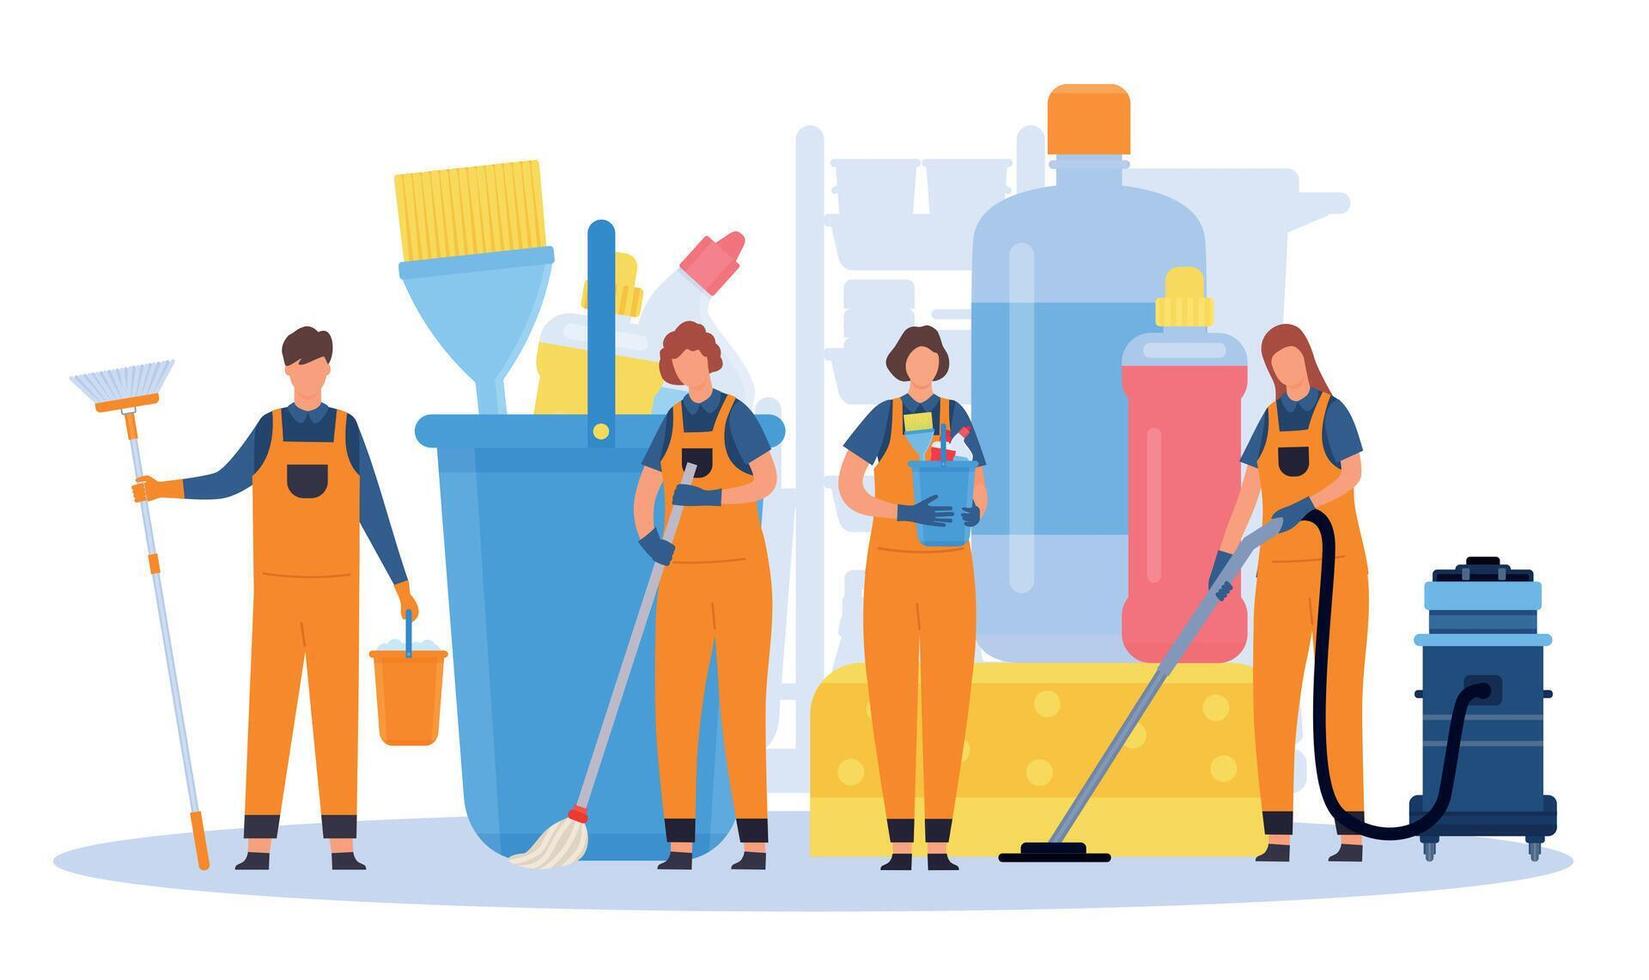 profesional limpieza Servicio equipo con equipo y herramientas. plano hombres y mujer limpiadores en uniformes con aspiradoras y escobas vector concepto